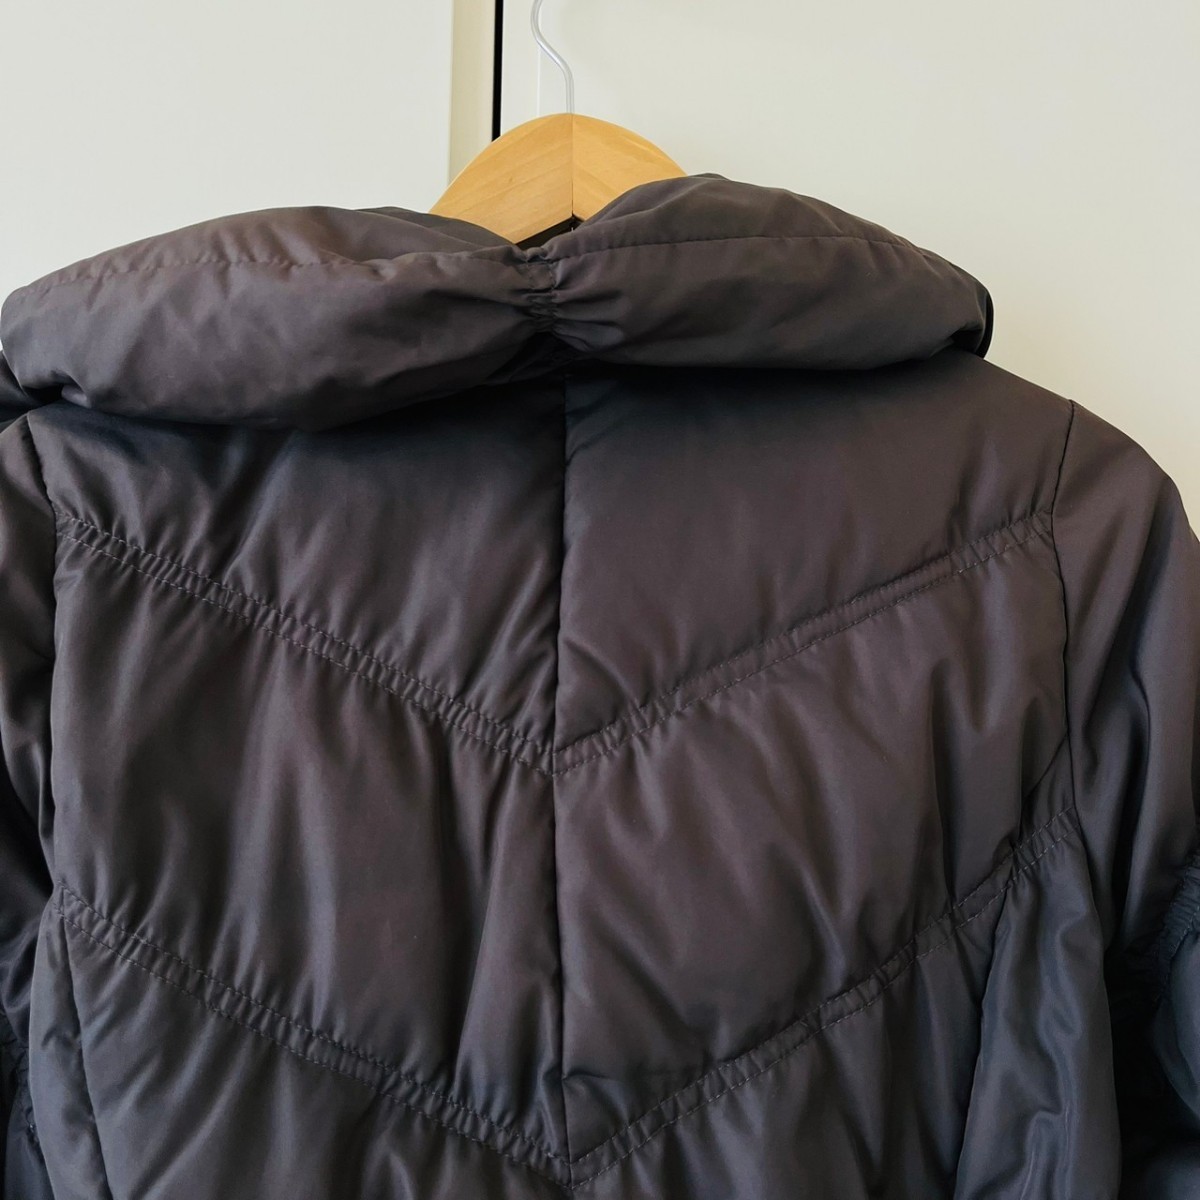 H2355cL NICOLE ...  размер  38 (M...) ... пальто  ... пиджак   джемпер  ...  женский   осень   Зима ...  защита от холода    был     